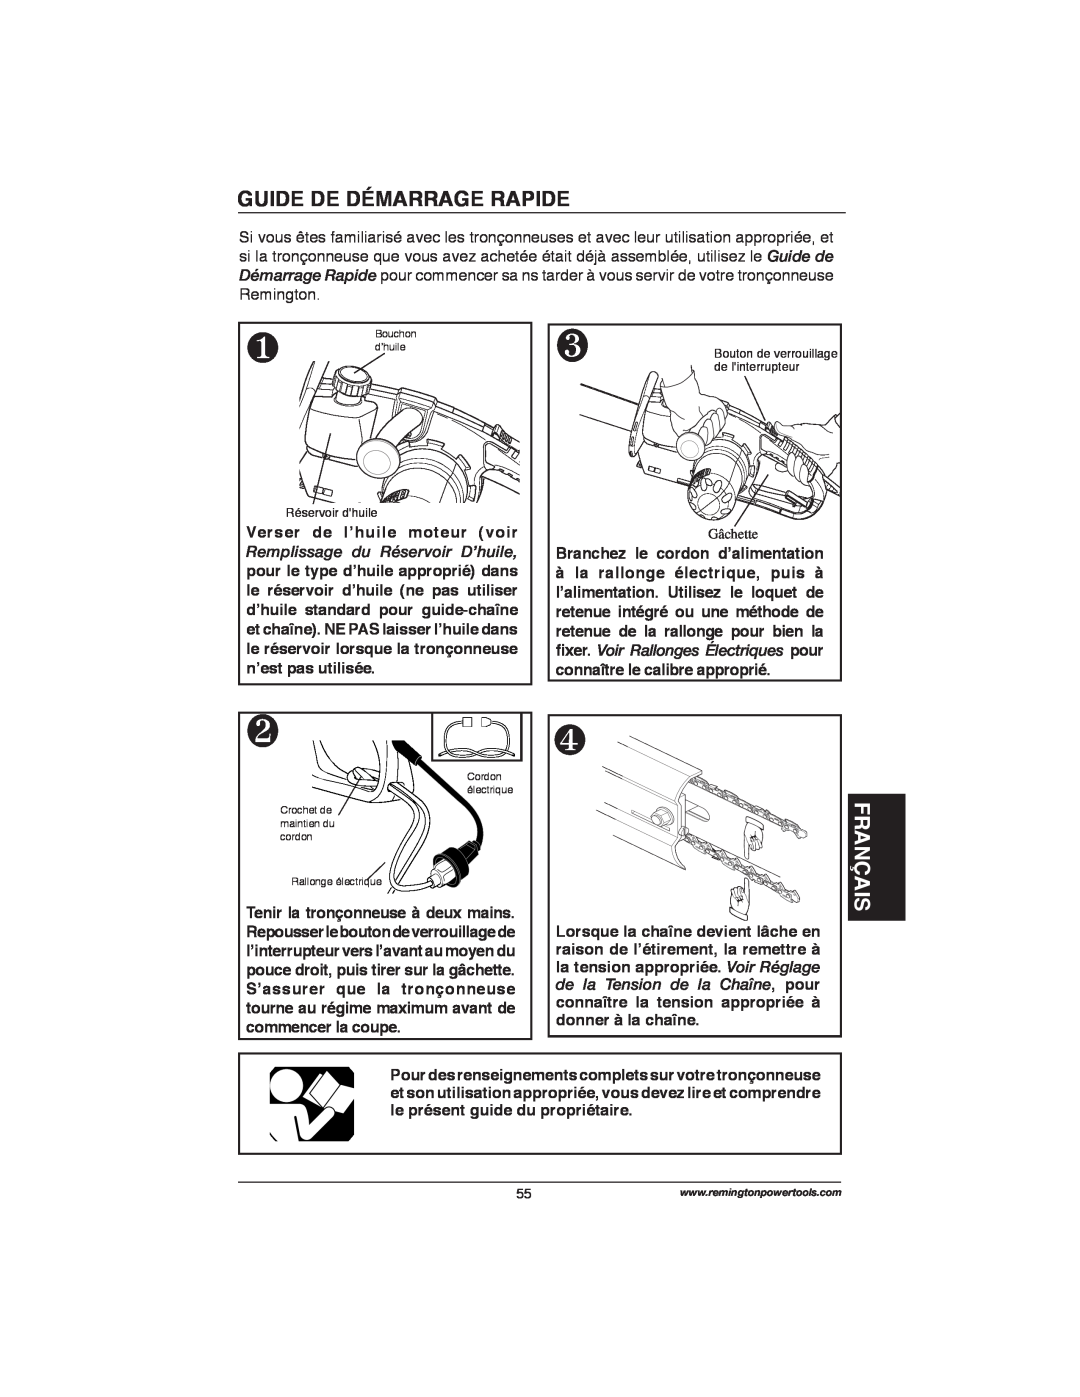 Remington Power Tools M15014AS, M30016AS Guide De Démarrage Rapide, Français, ﬁxer. Voir Rallonges Électriques pour 